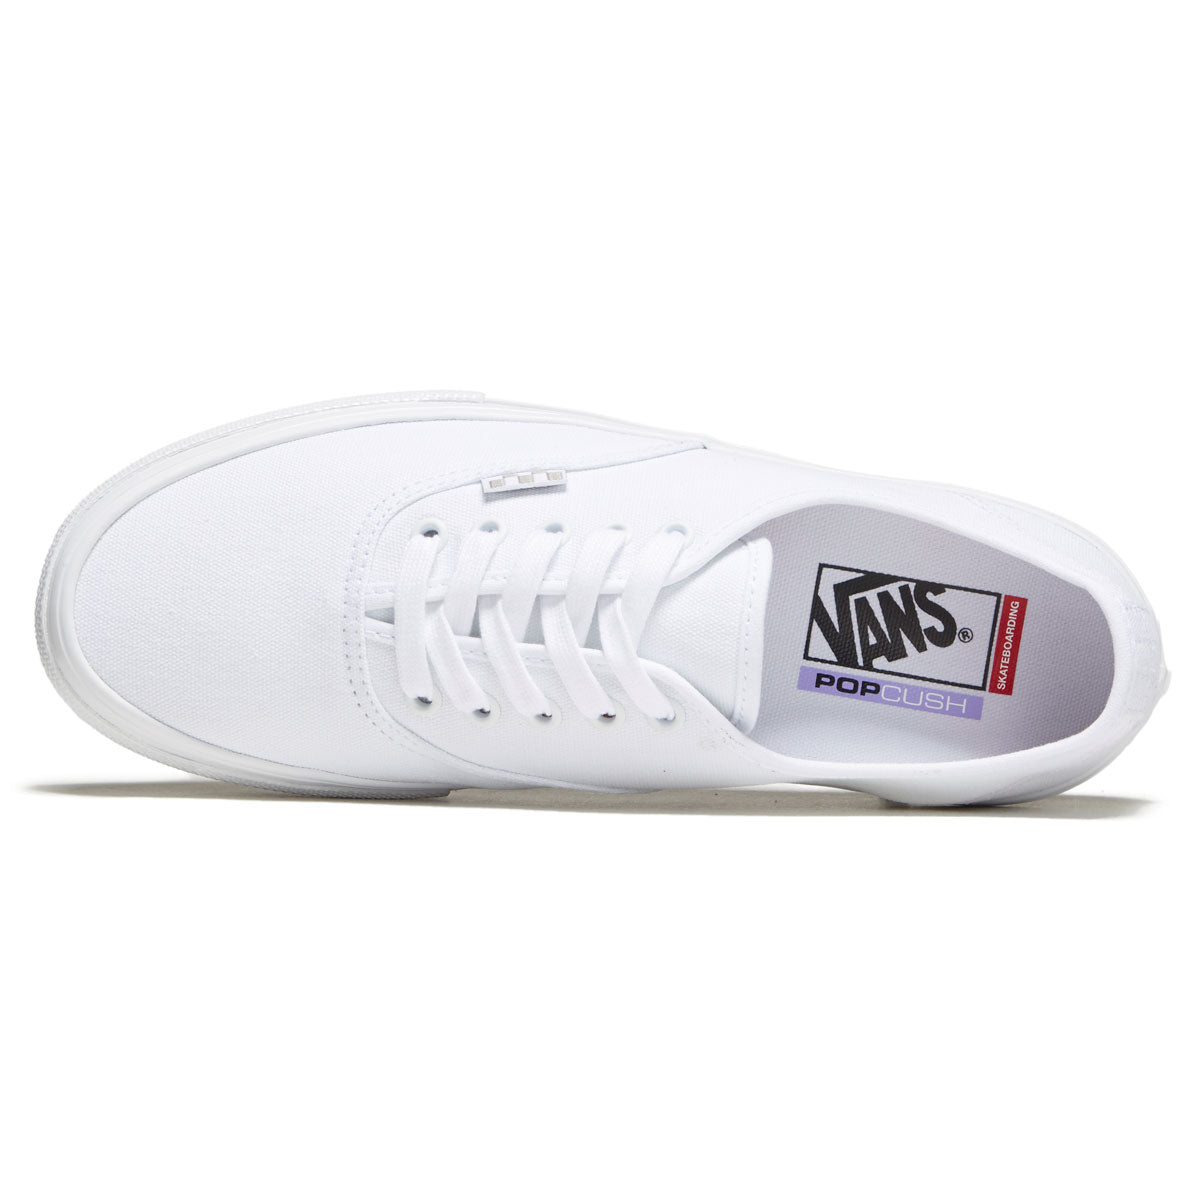 Vans Skate Authentic Shoes - True White image 3